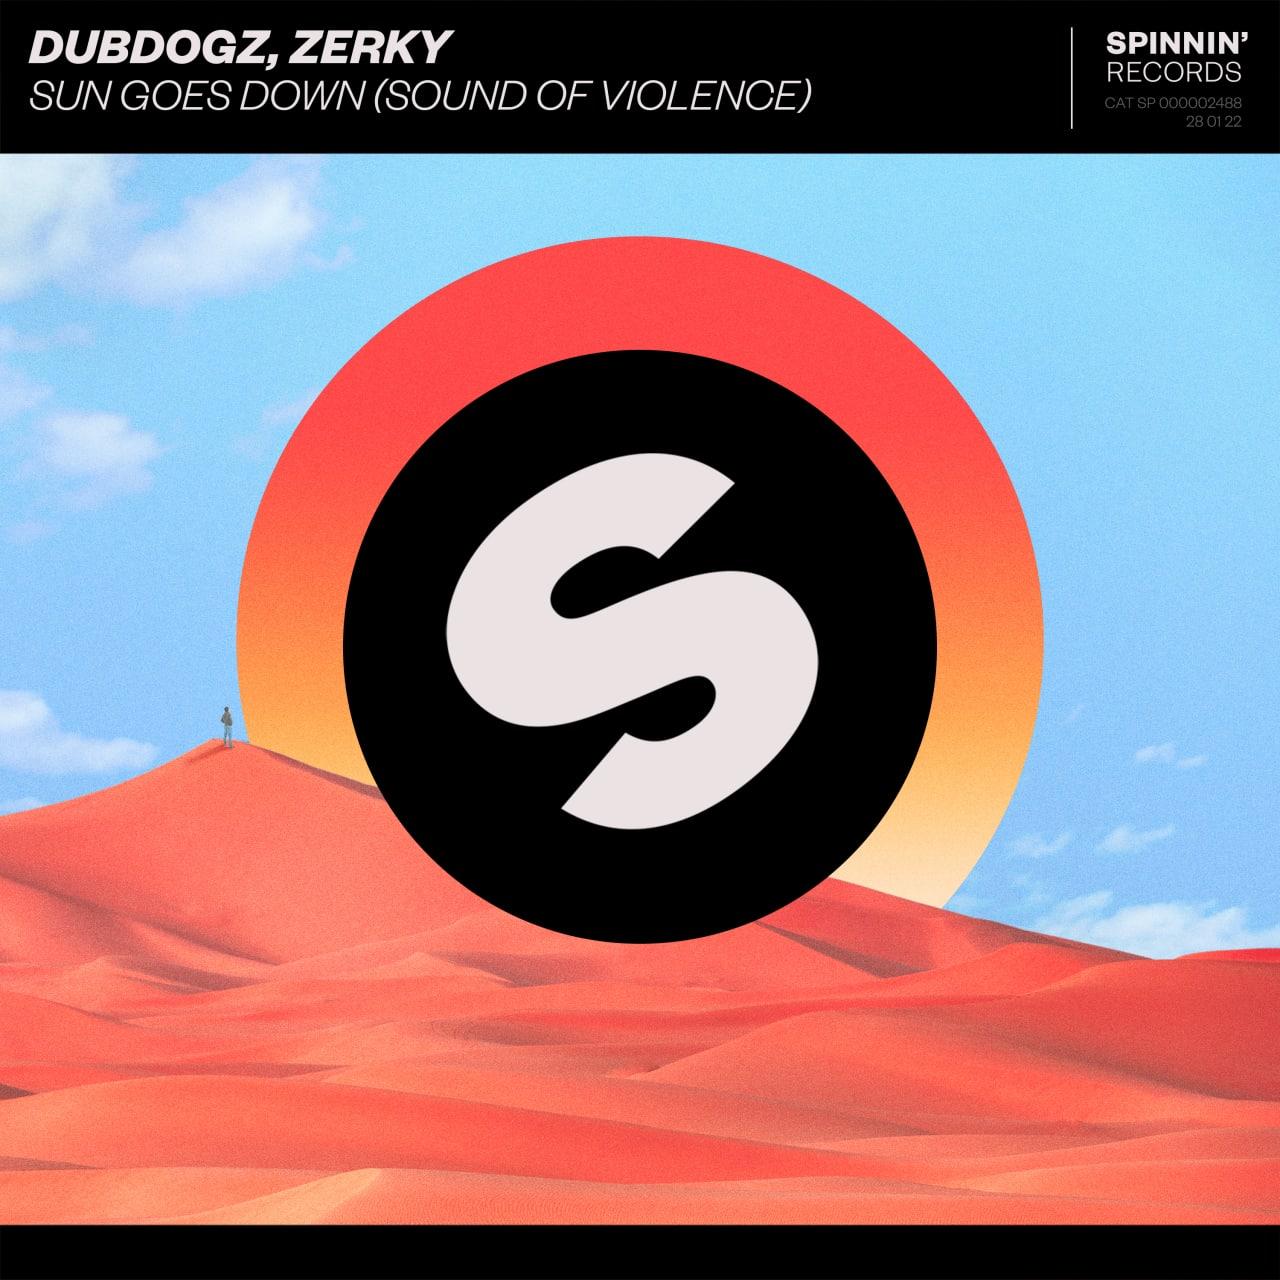 Dubdogz, Zerky - Sun Goes Down (Sound Of Violence) (Extended Mix)